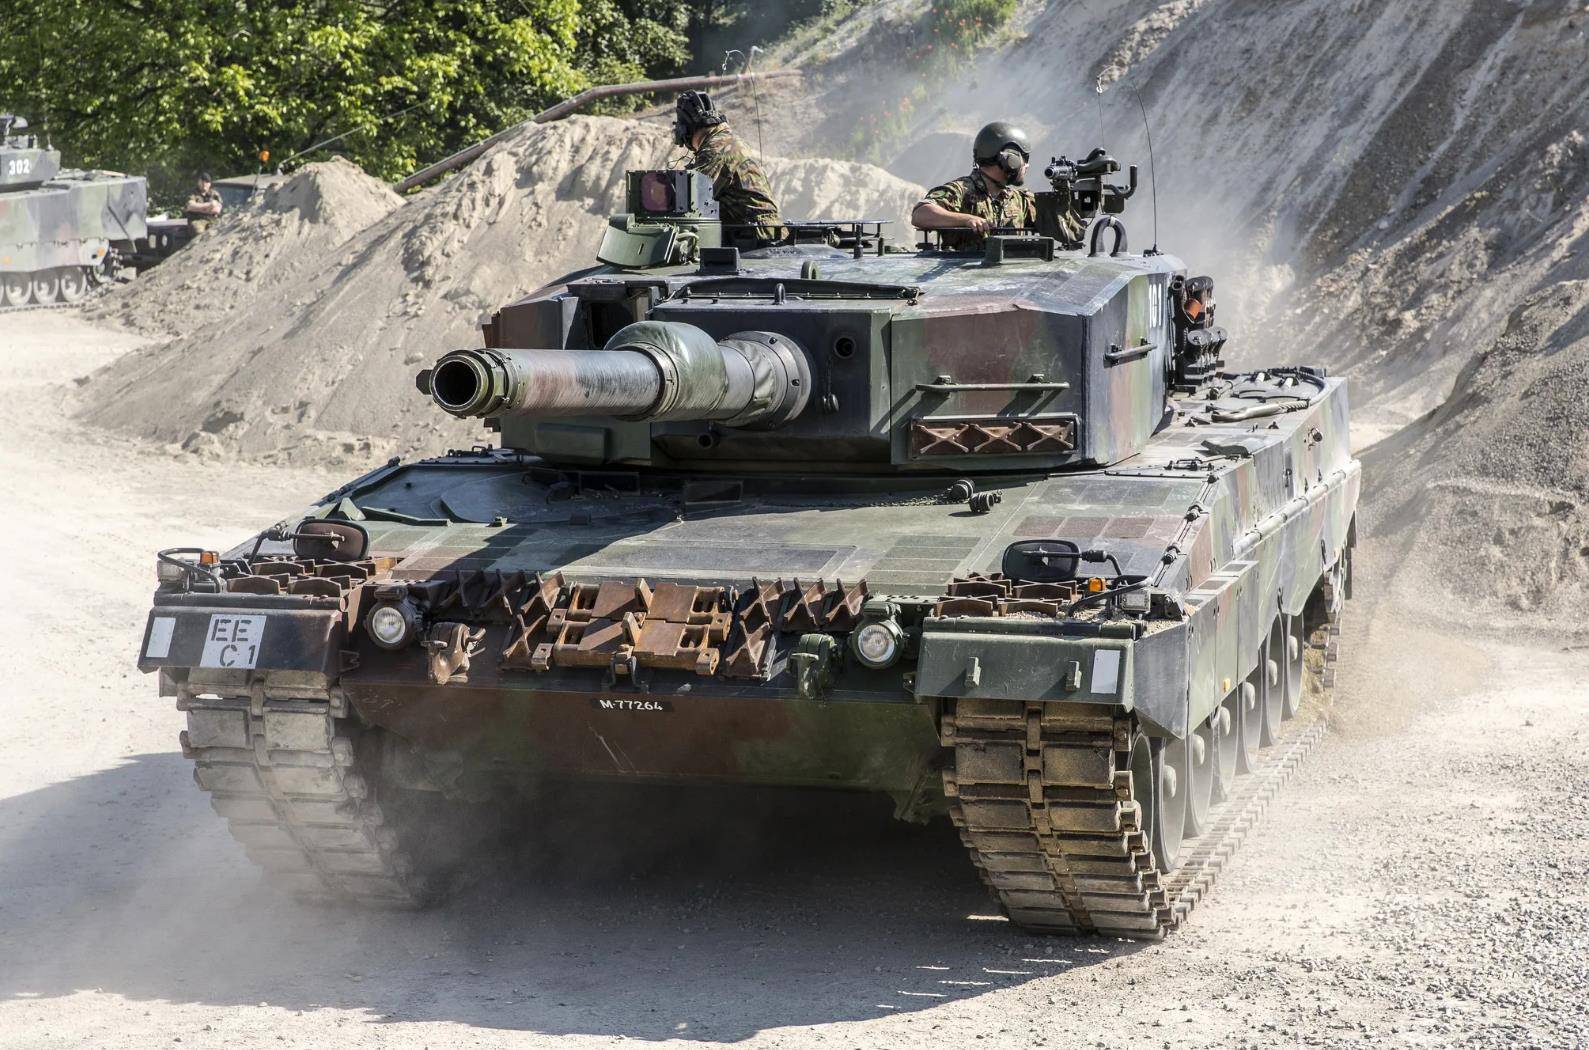 豹2主战坦克,配置间隙复合装甲,被广泛采购